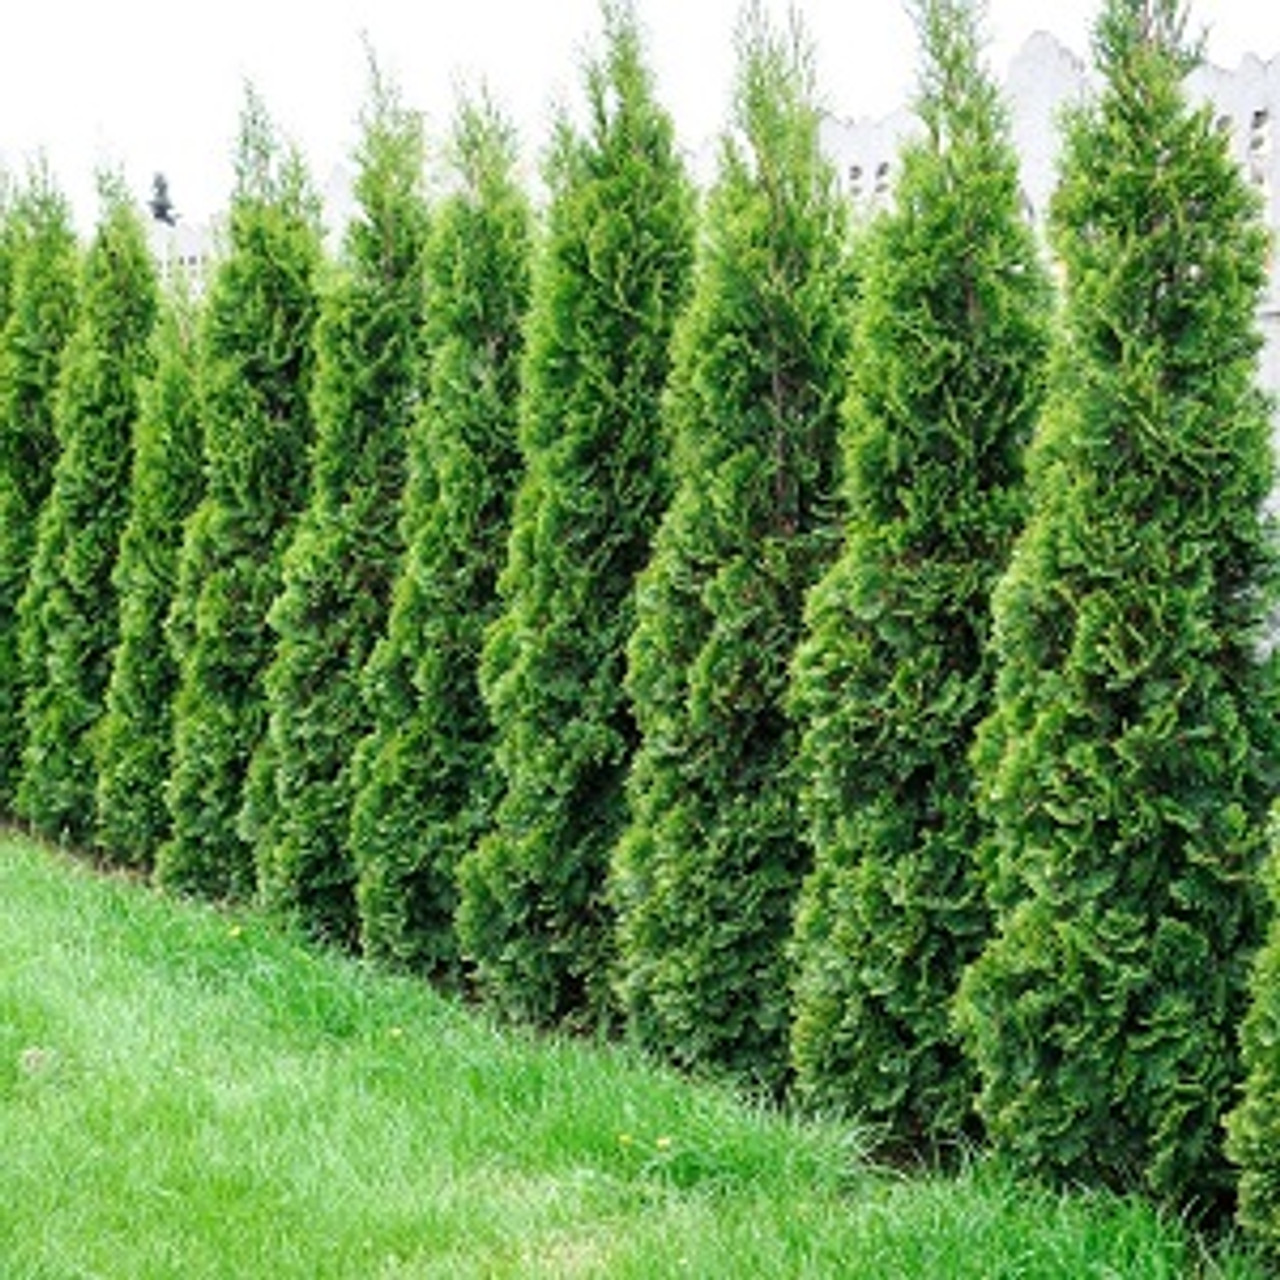 Ontario Grown Emerald Cedar